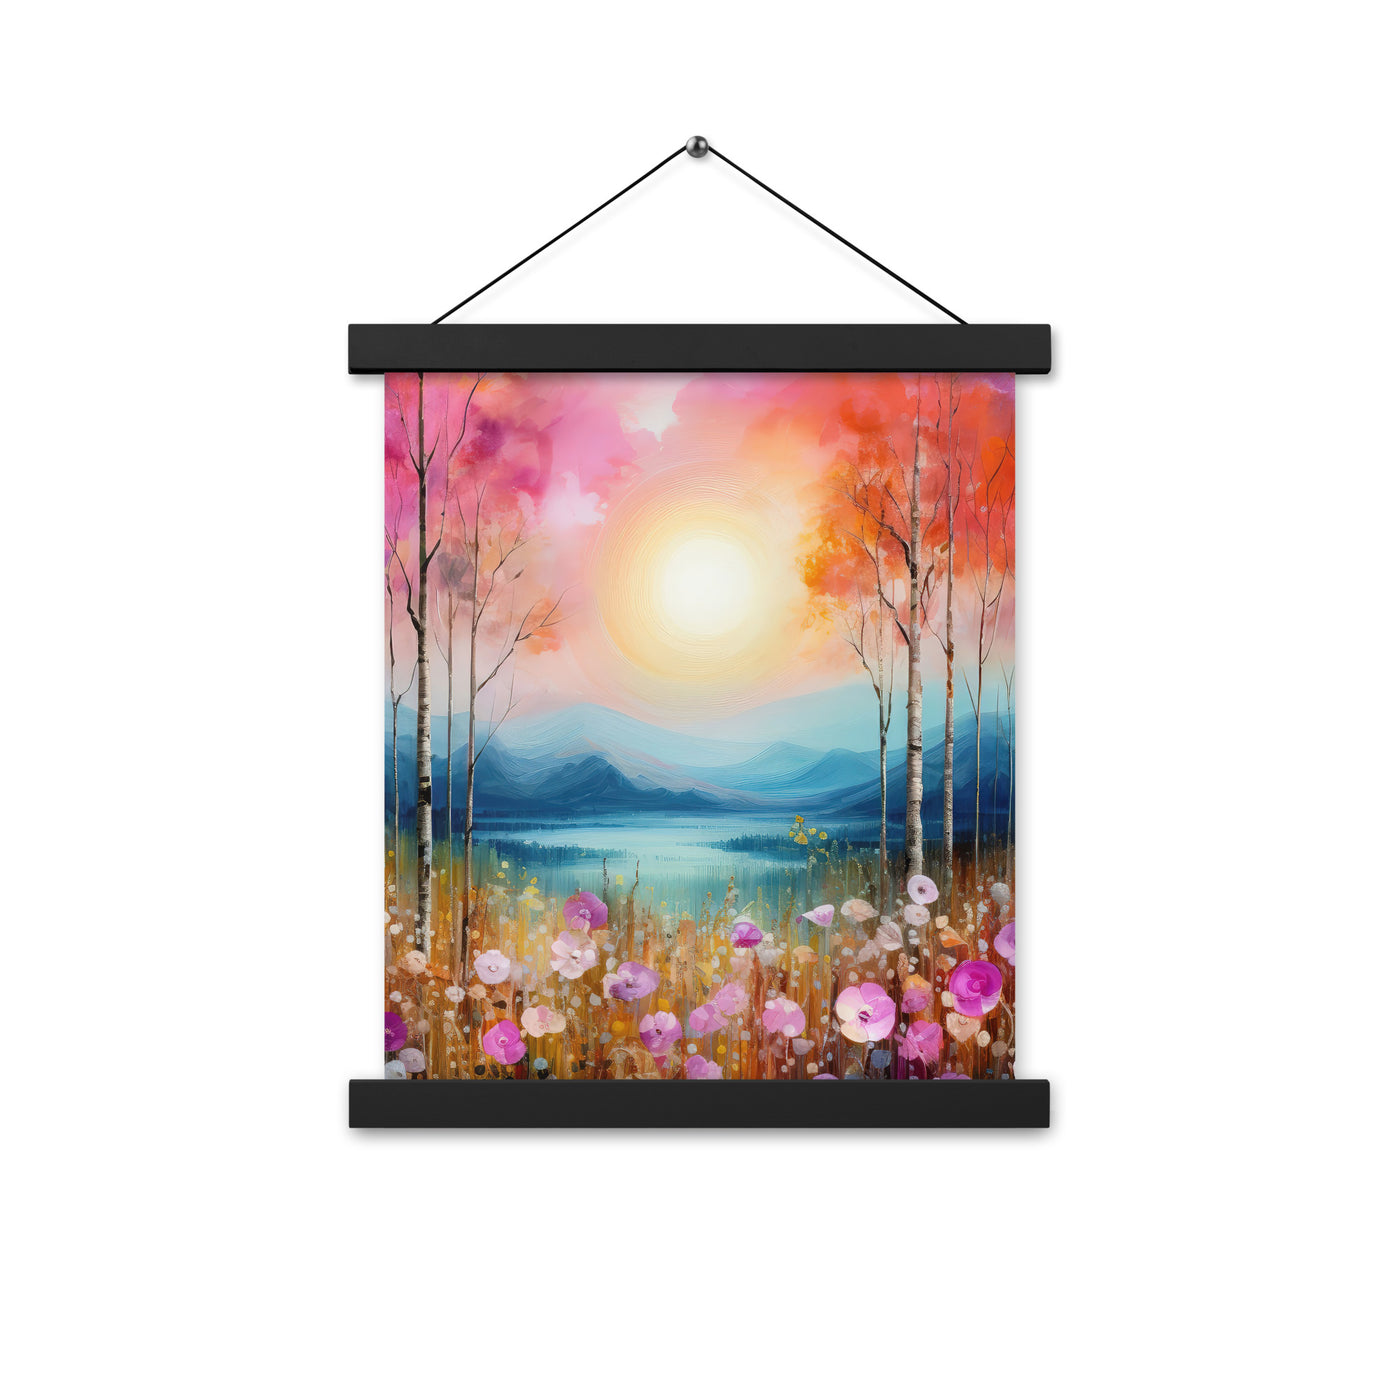 Berge, See, pinke Bäume und Blumen - Malerei - Premium Poster mit Aufhängung berge xxx 27.9 x 35.6 cm